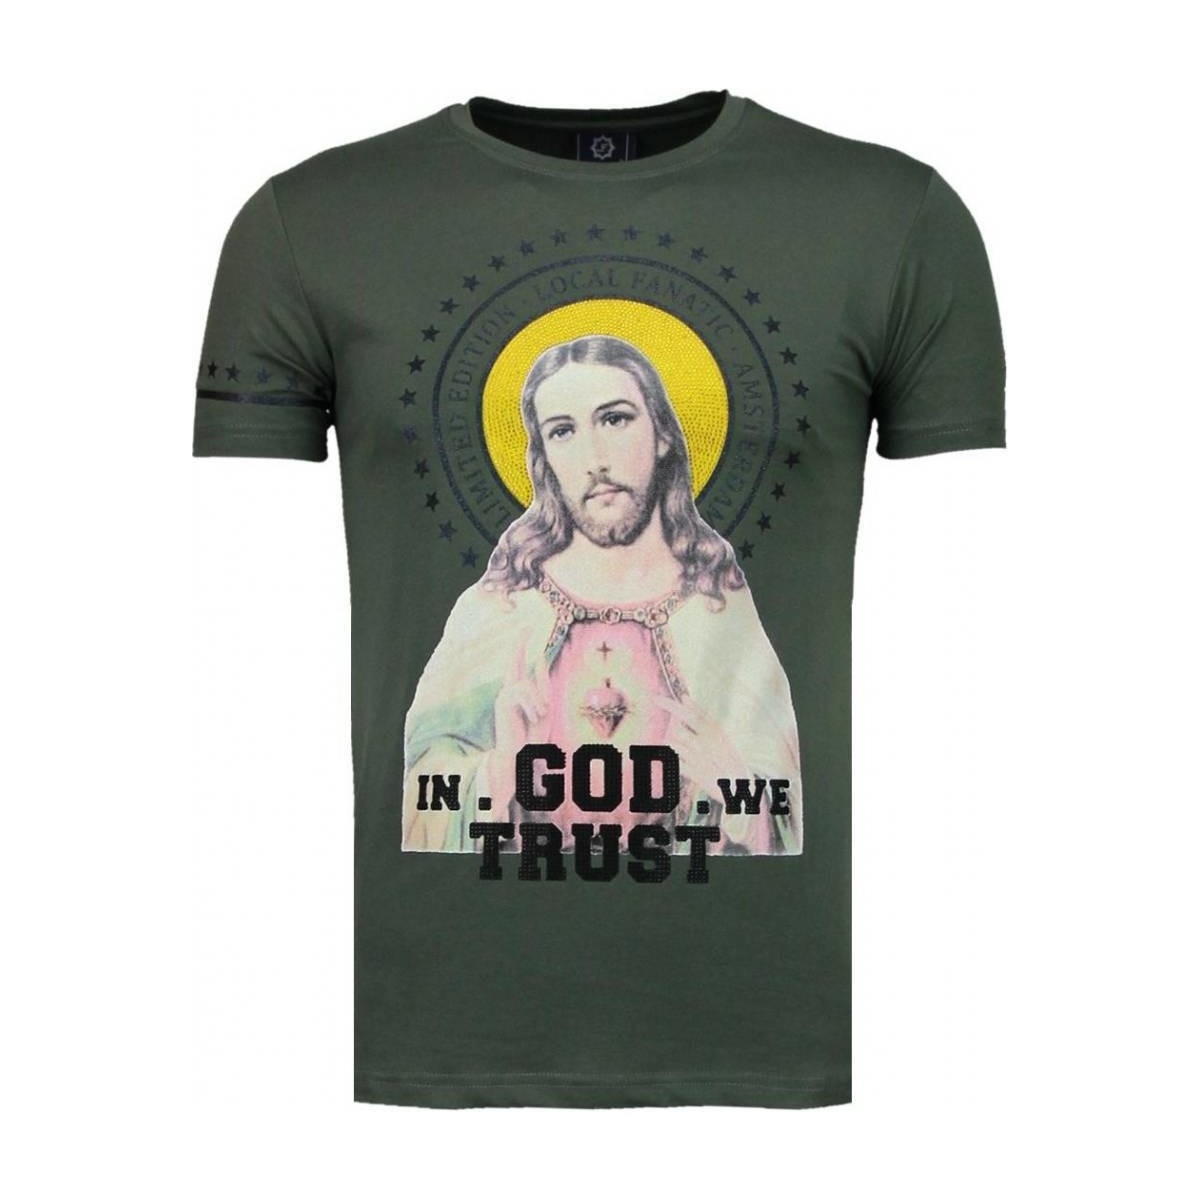 textil Hombre Camisetas manga corta Local Fanatic Jezus Rhinestone Personalizadas Verde